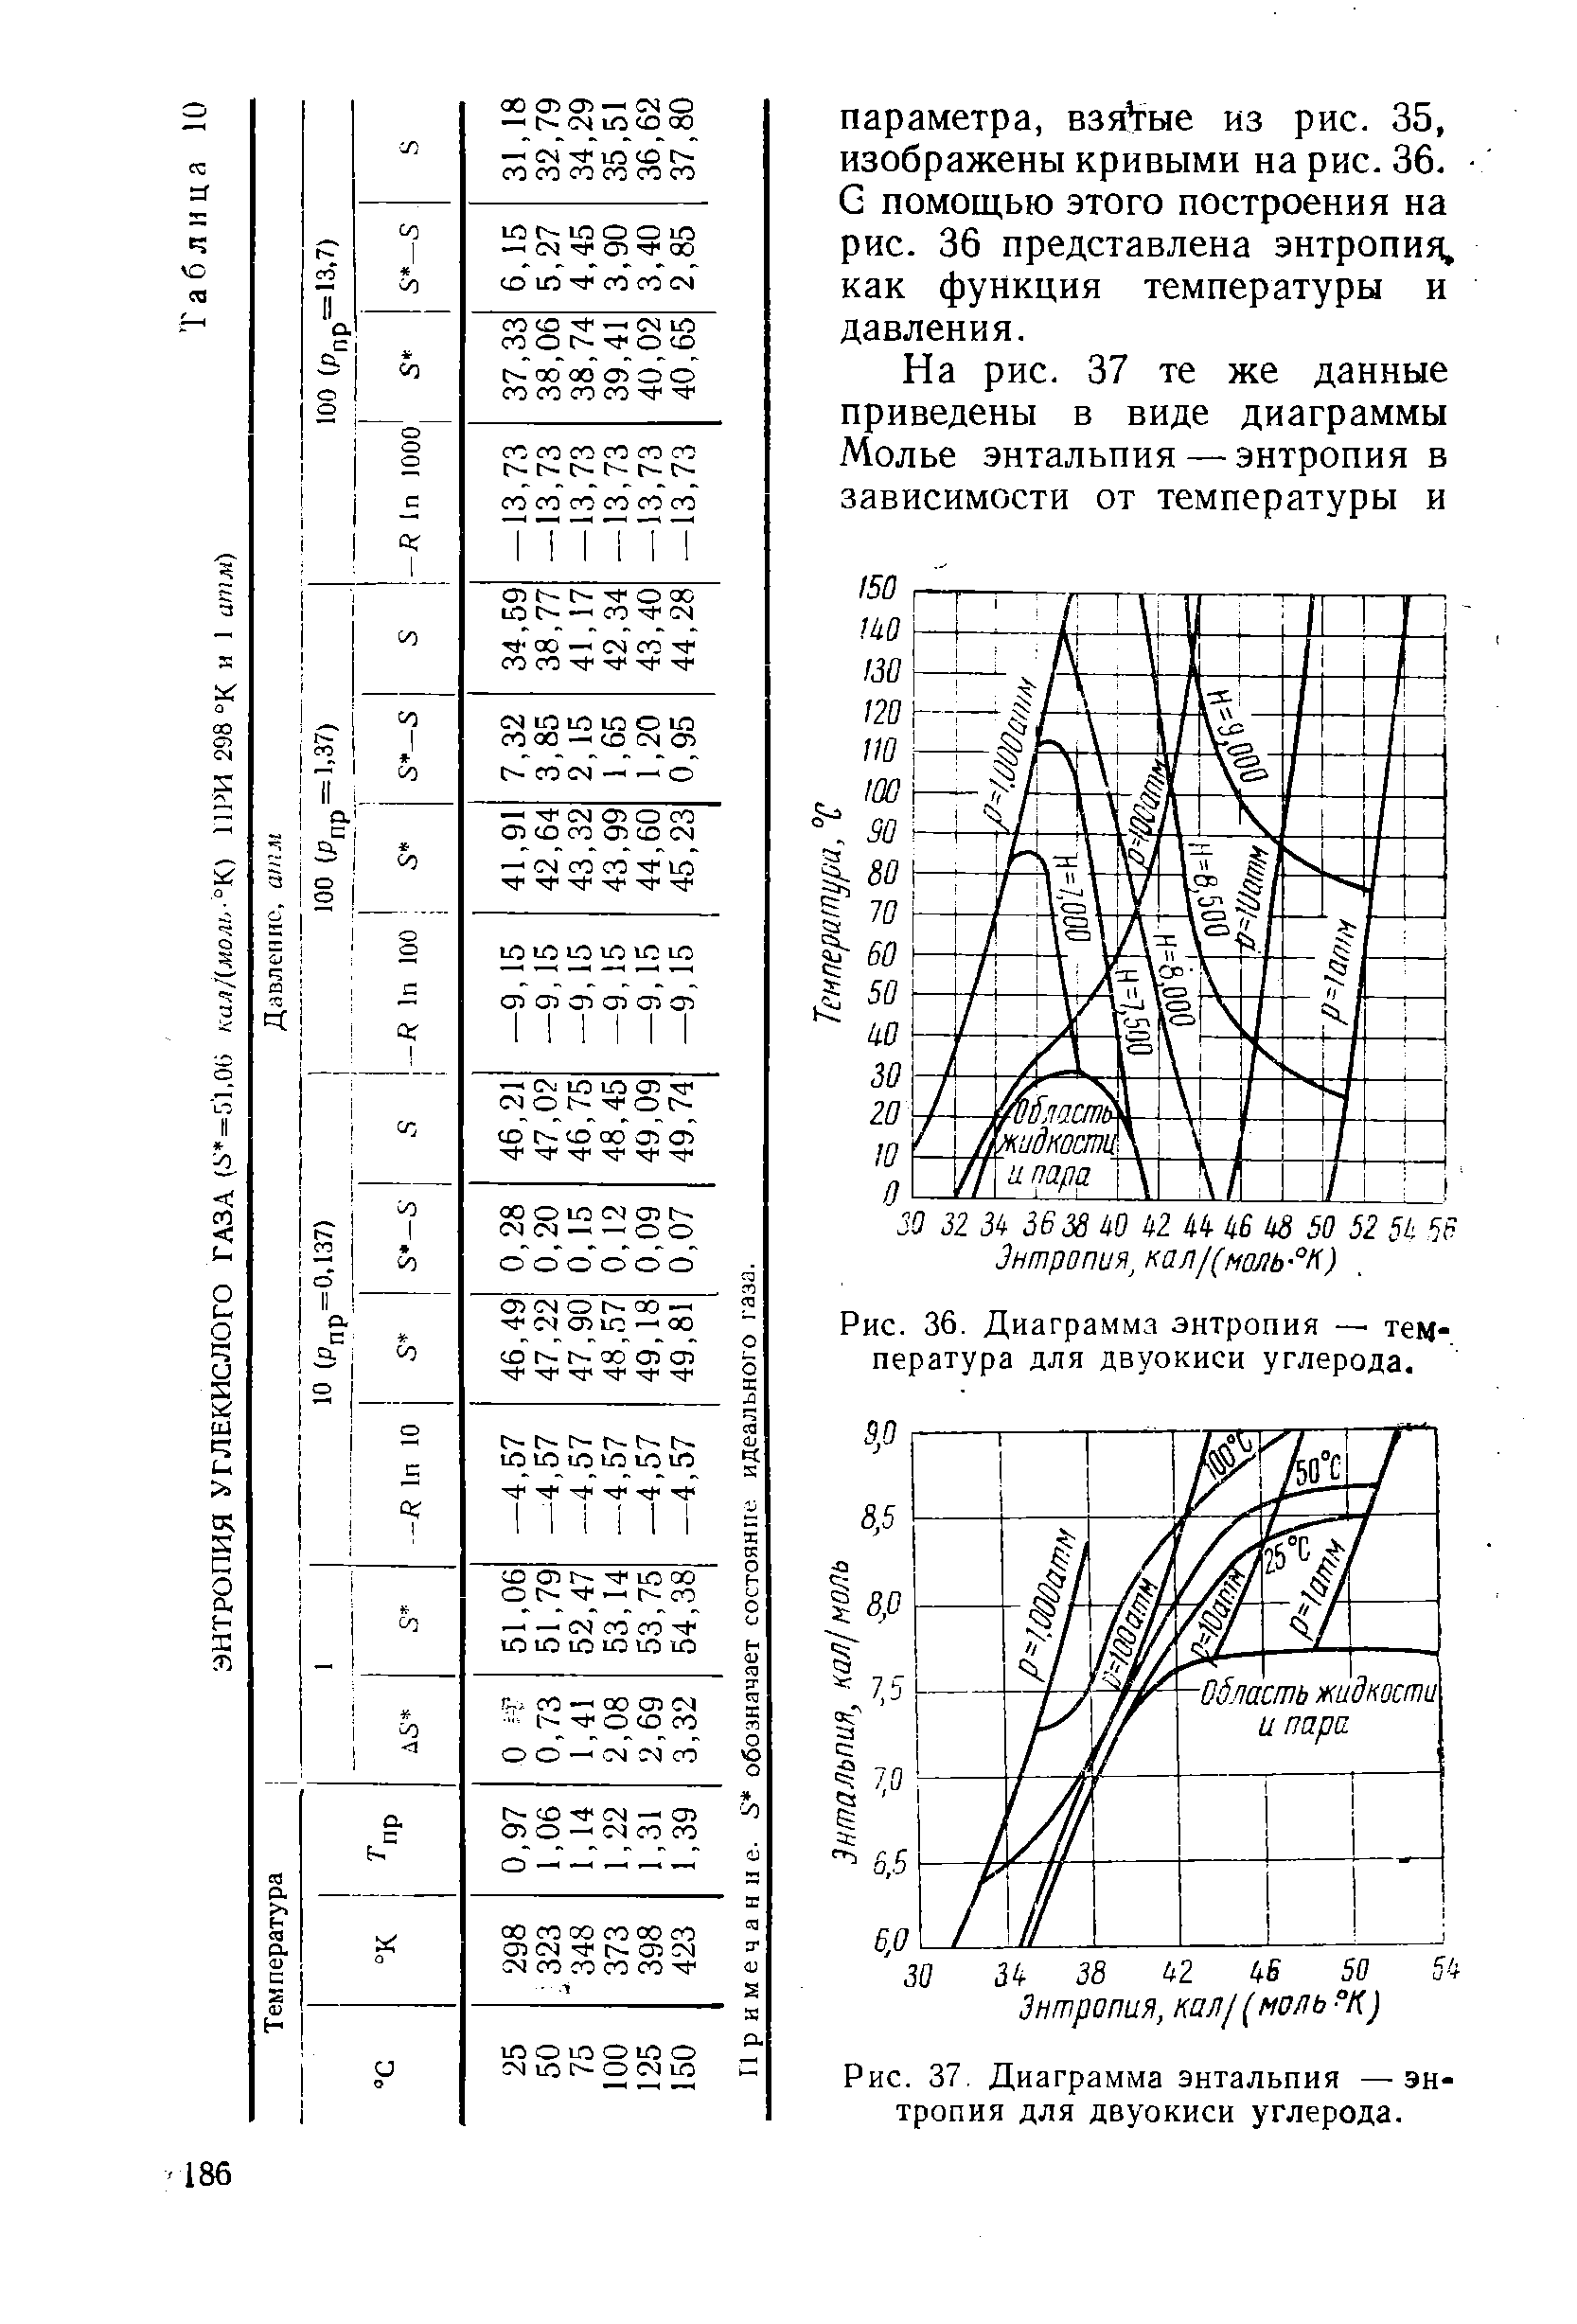 Рис. 37, Диаграмма энтальпия — энтропия для двуокиси углерода.
